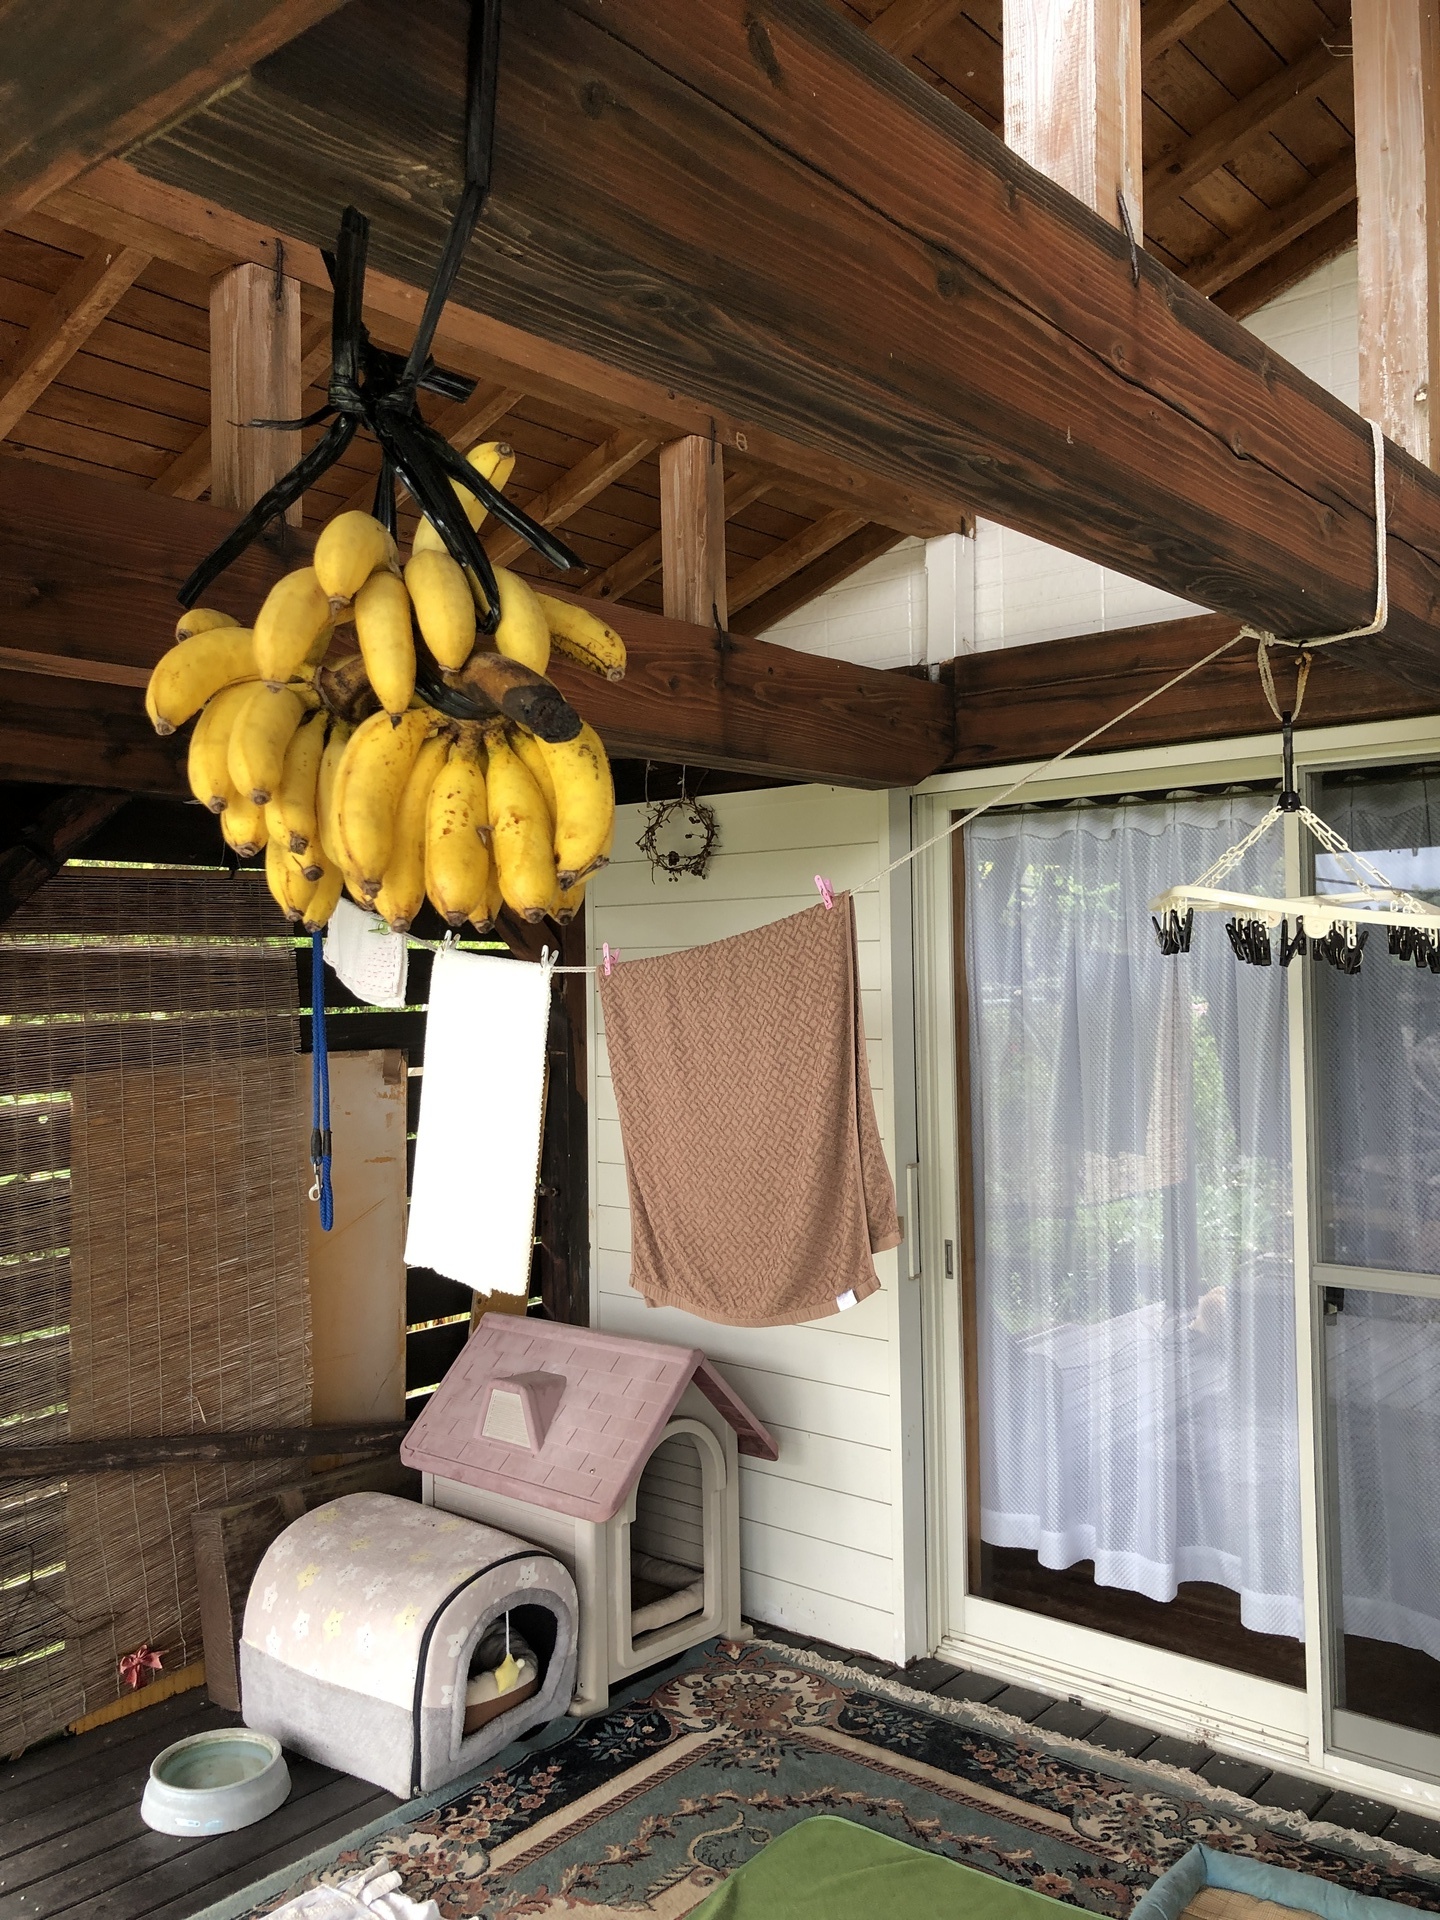 吊るしたバナナが熟した: ここは屋久島